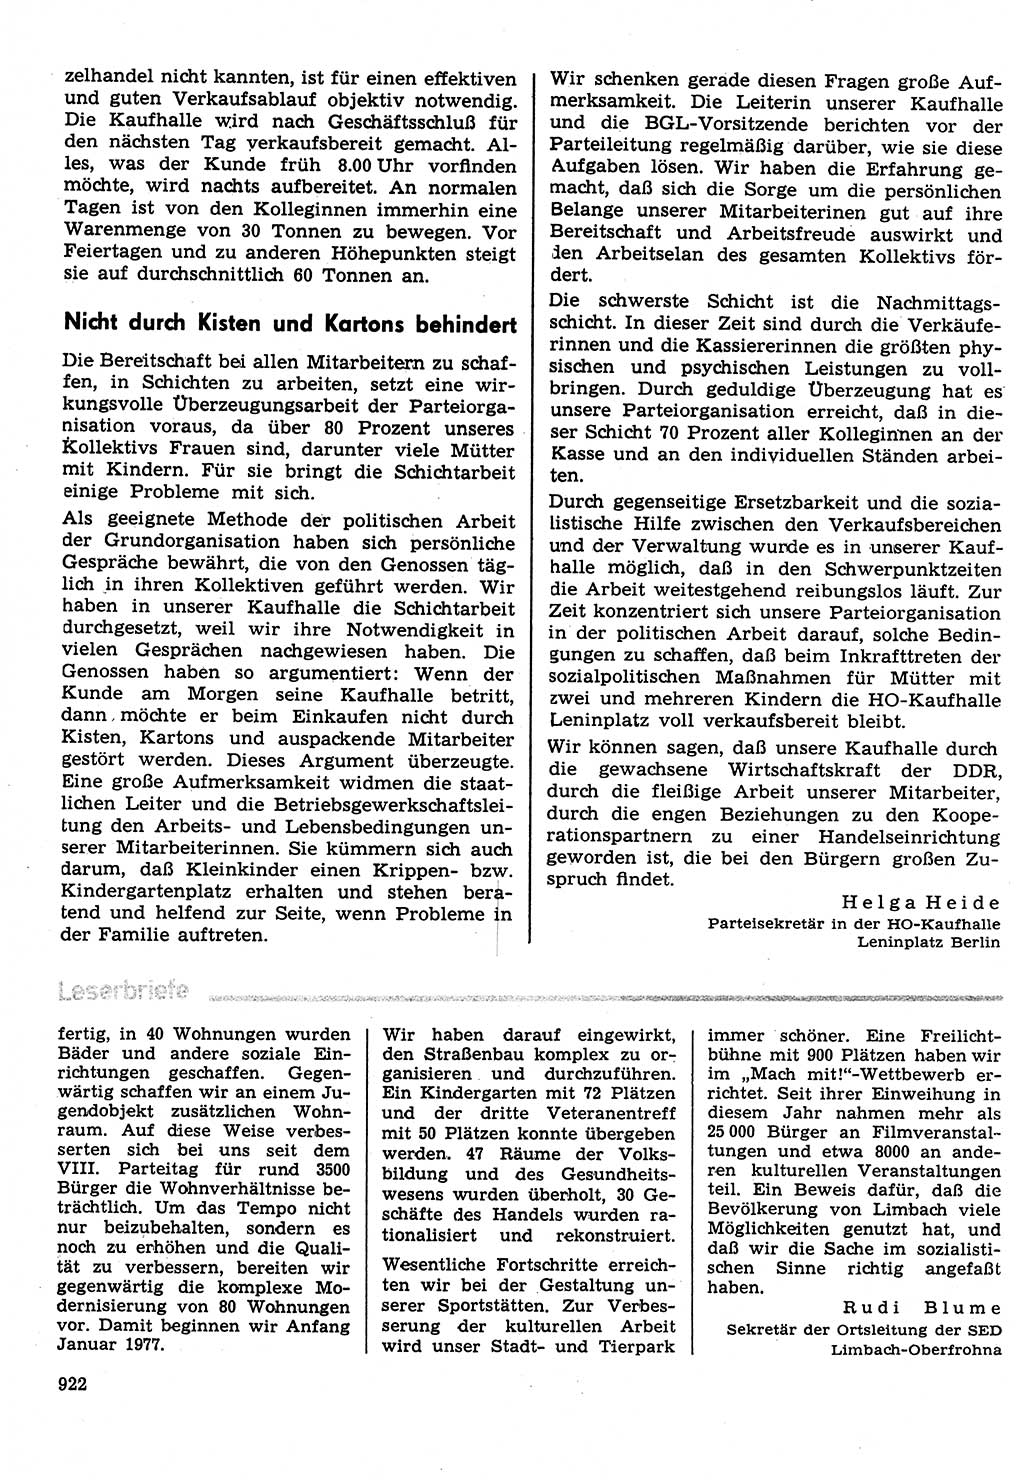 Neuer Weg (NW), Organ des Zentralkomitees (ZK) der SED (Sozialistische Einheitspartei Deutschlands) für Fragen des Parteilebens, 31. Jahrgang [Deutsche Demokratische Republik (DDR)] 1976, Seite 922 (NW ZK SED DDR 1976, S. 922)